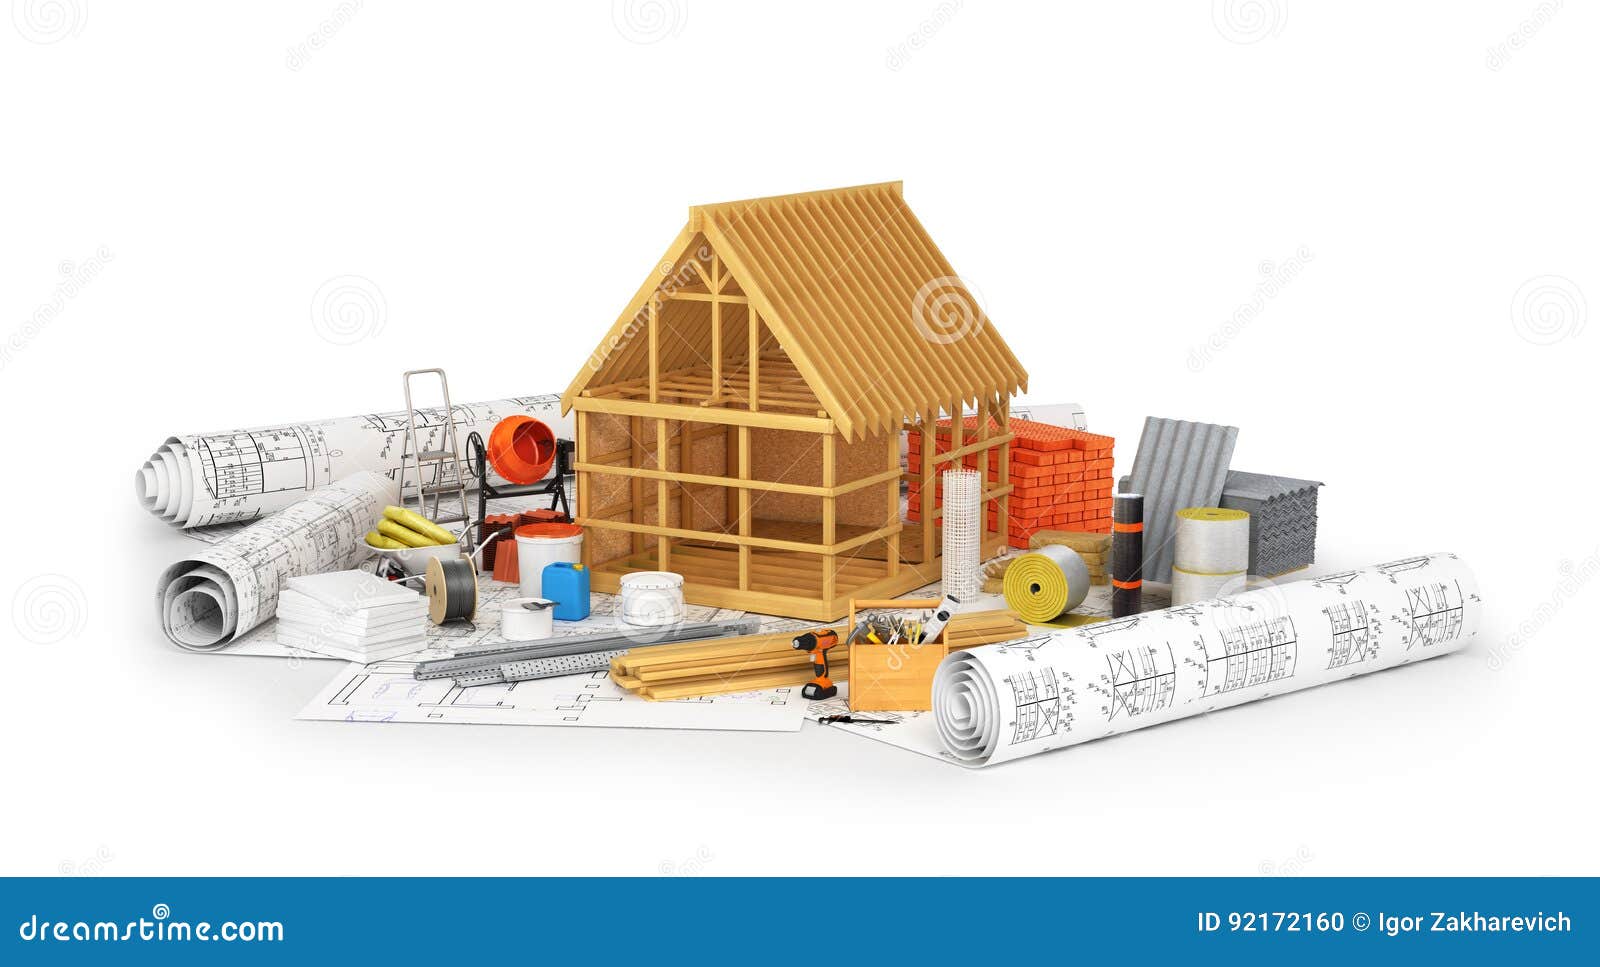 construction materials.